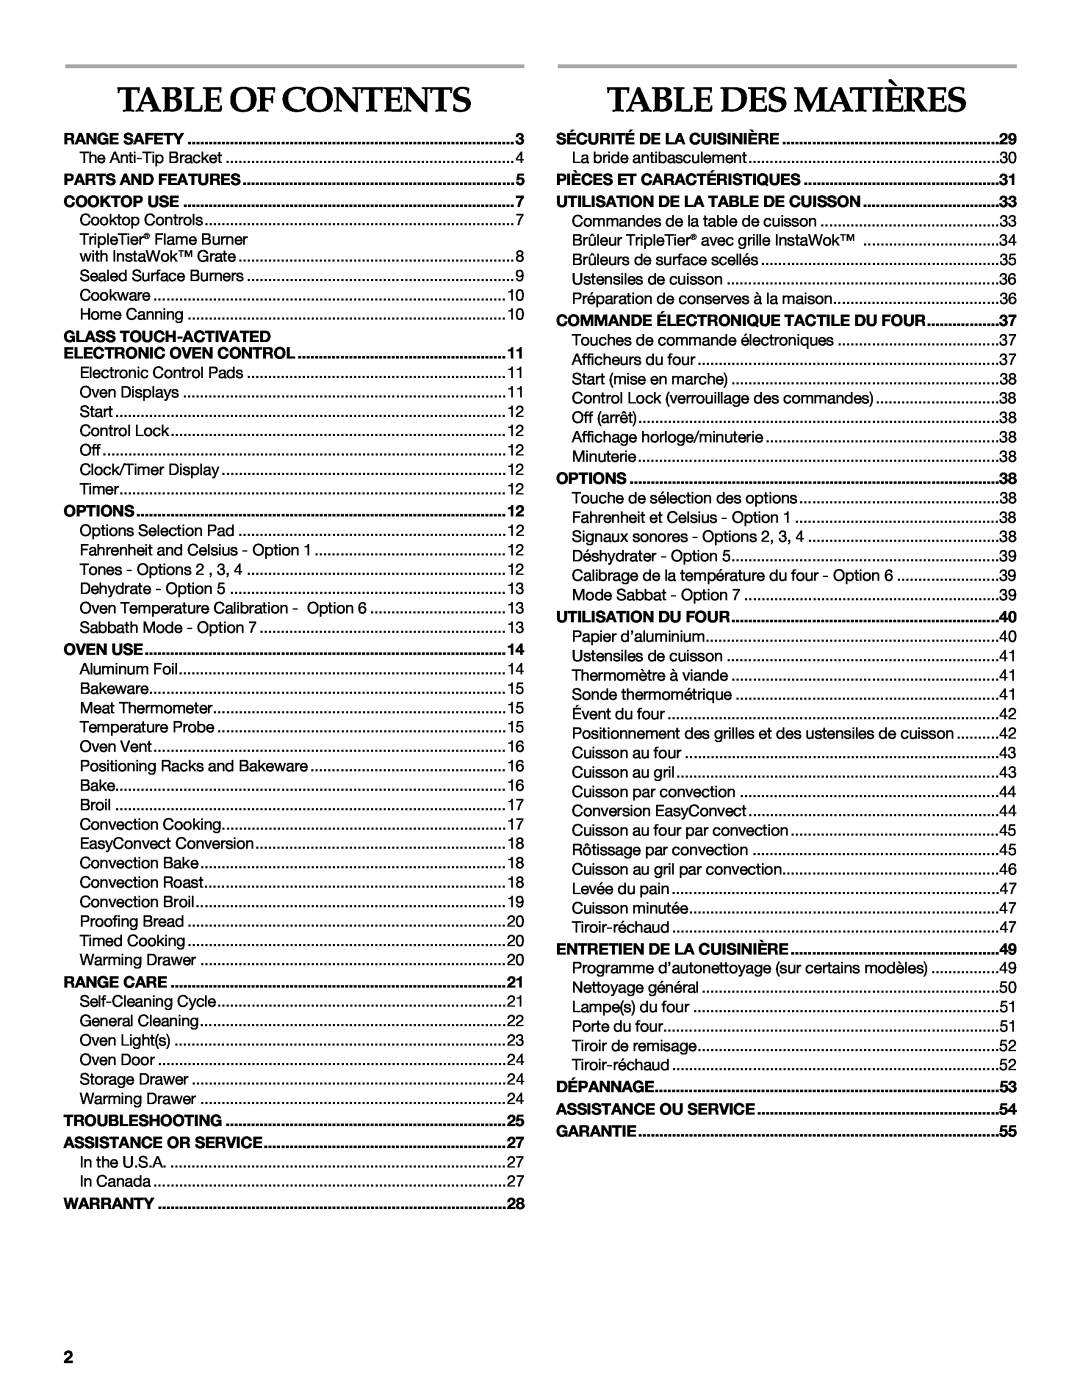 KitchenAid 9763457, KGRS807 Table Of Contents, Table Des Matières, Positionnement des grilles et des ustensiles de cuisson 